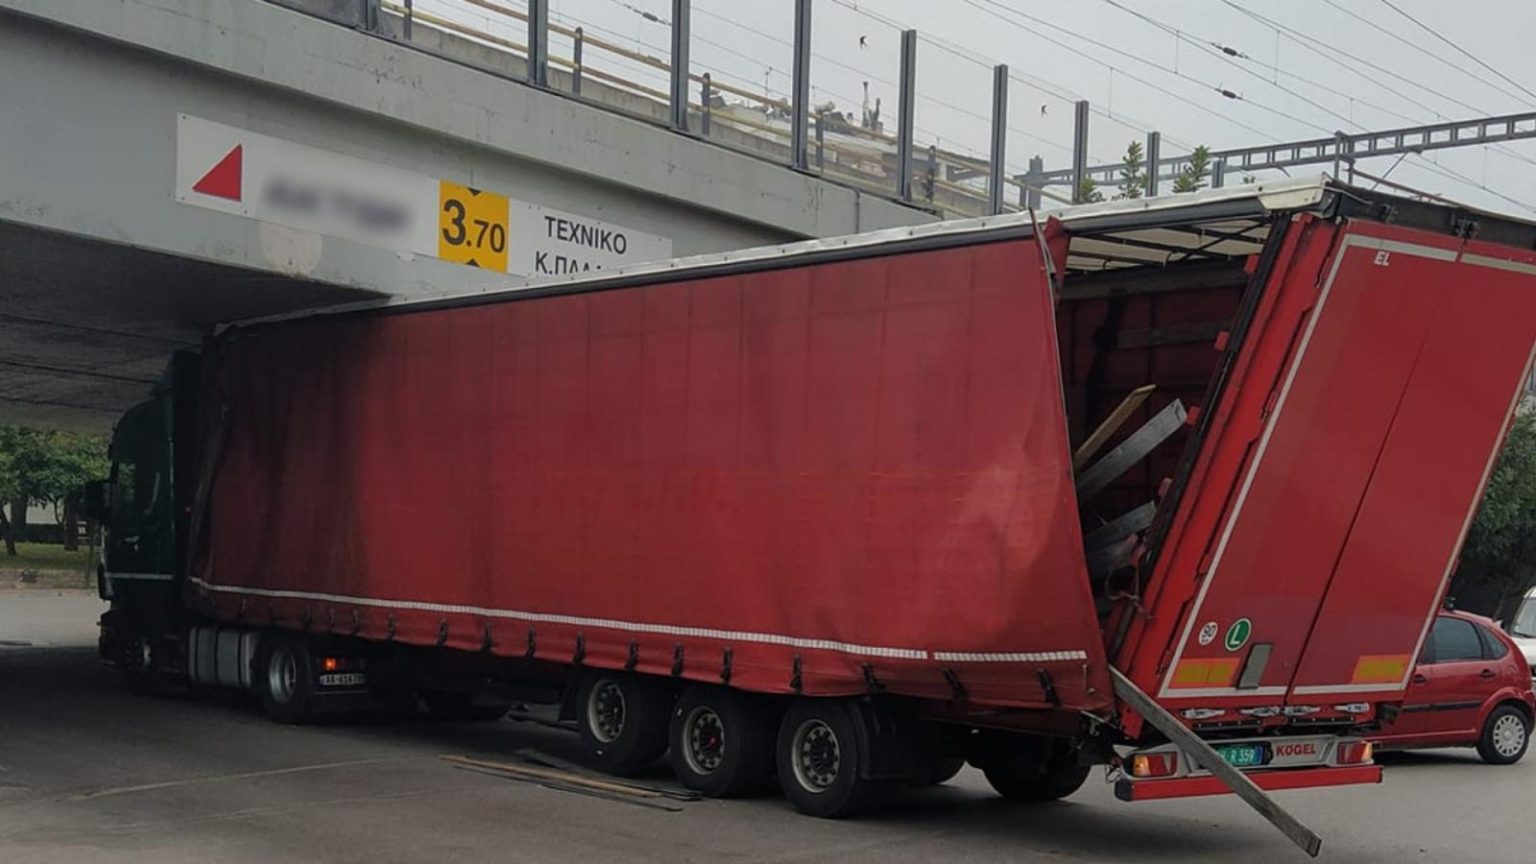 Φορτηγό κόλλησε σε γέφυρα στις Αχαρνές